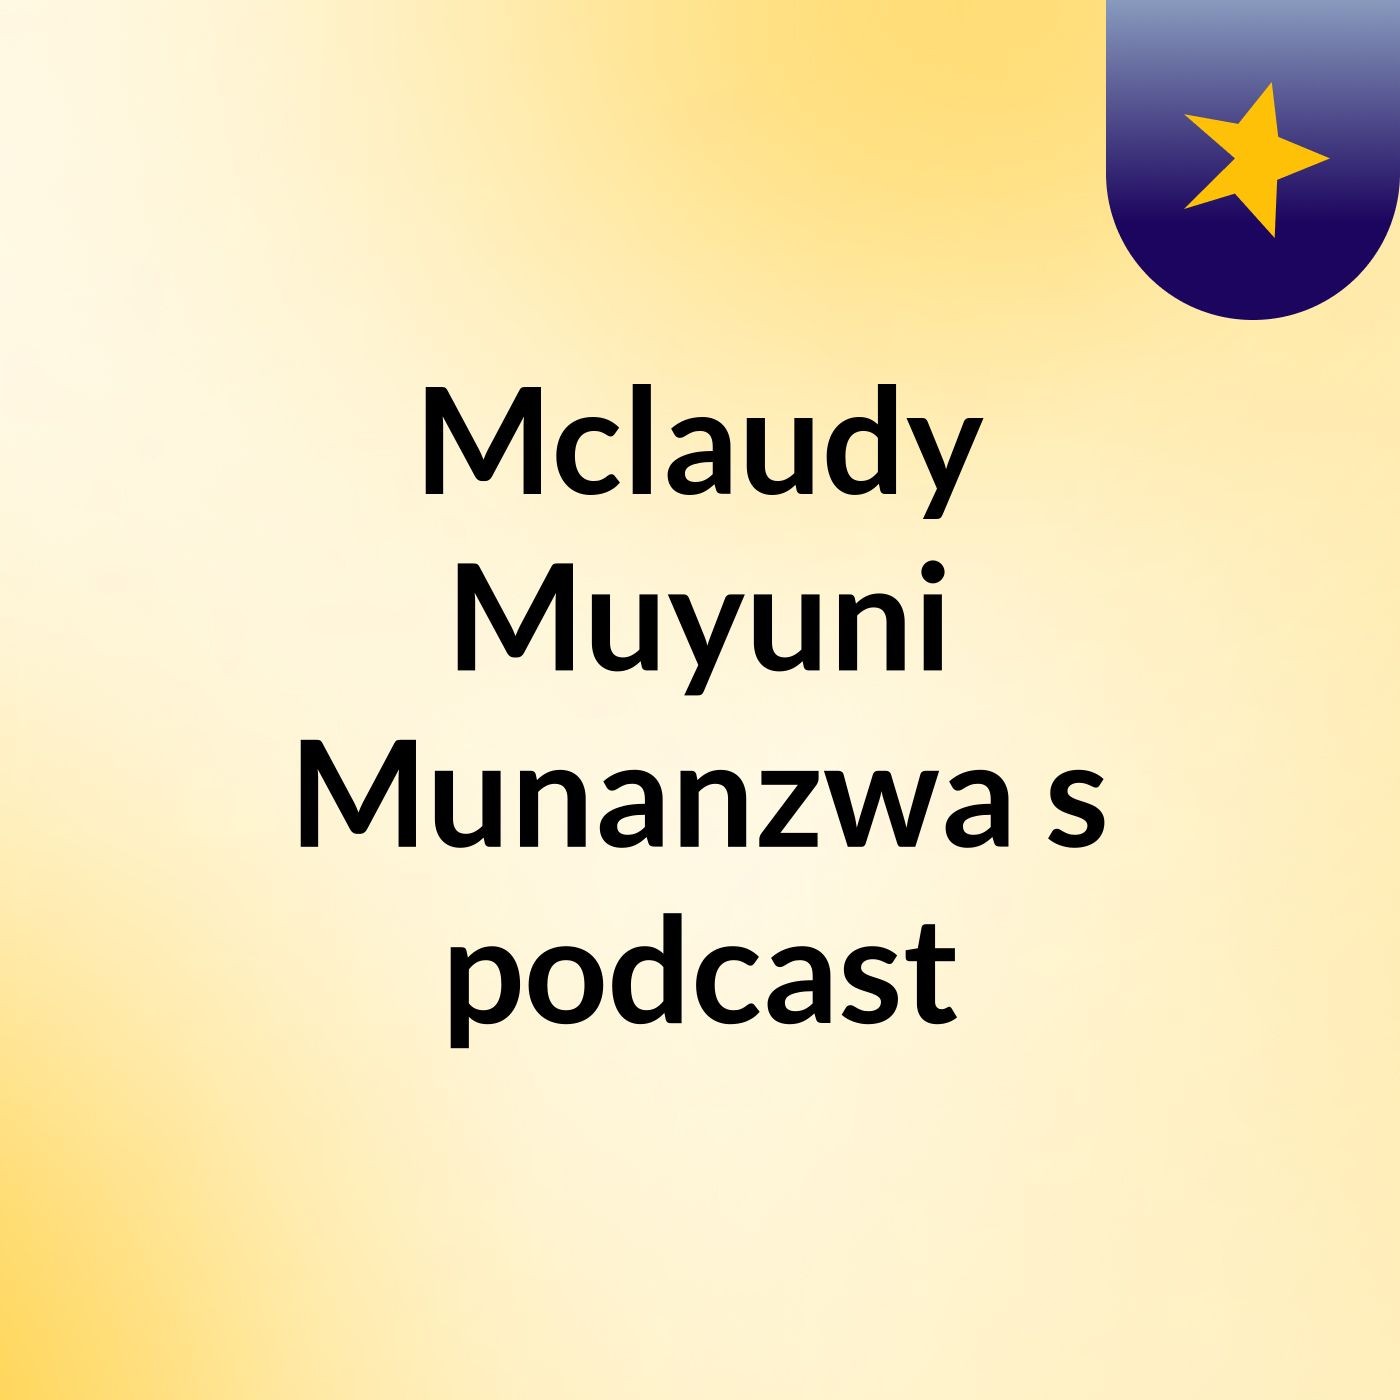 Episode 4 - Mclaudy Muyuni Munanzwa's podcast